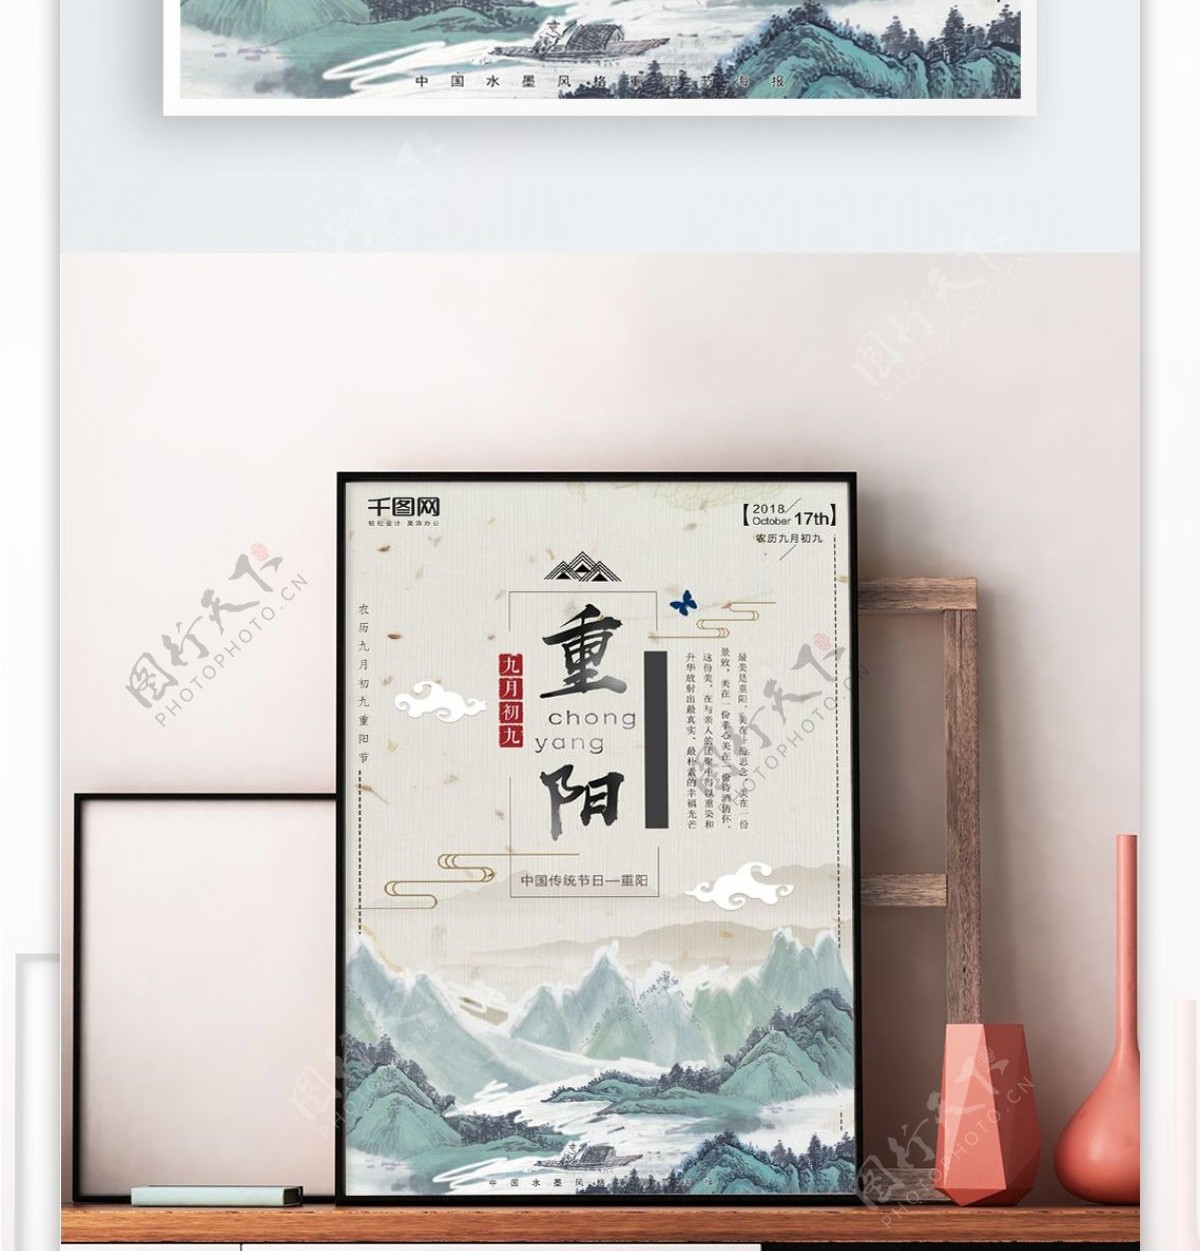 中国风山水重阳节水墨风格创意海报